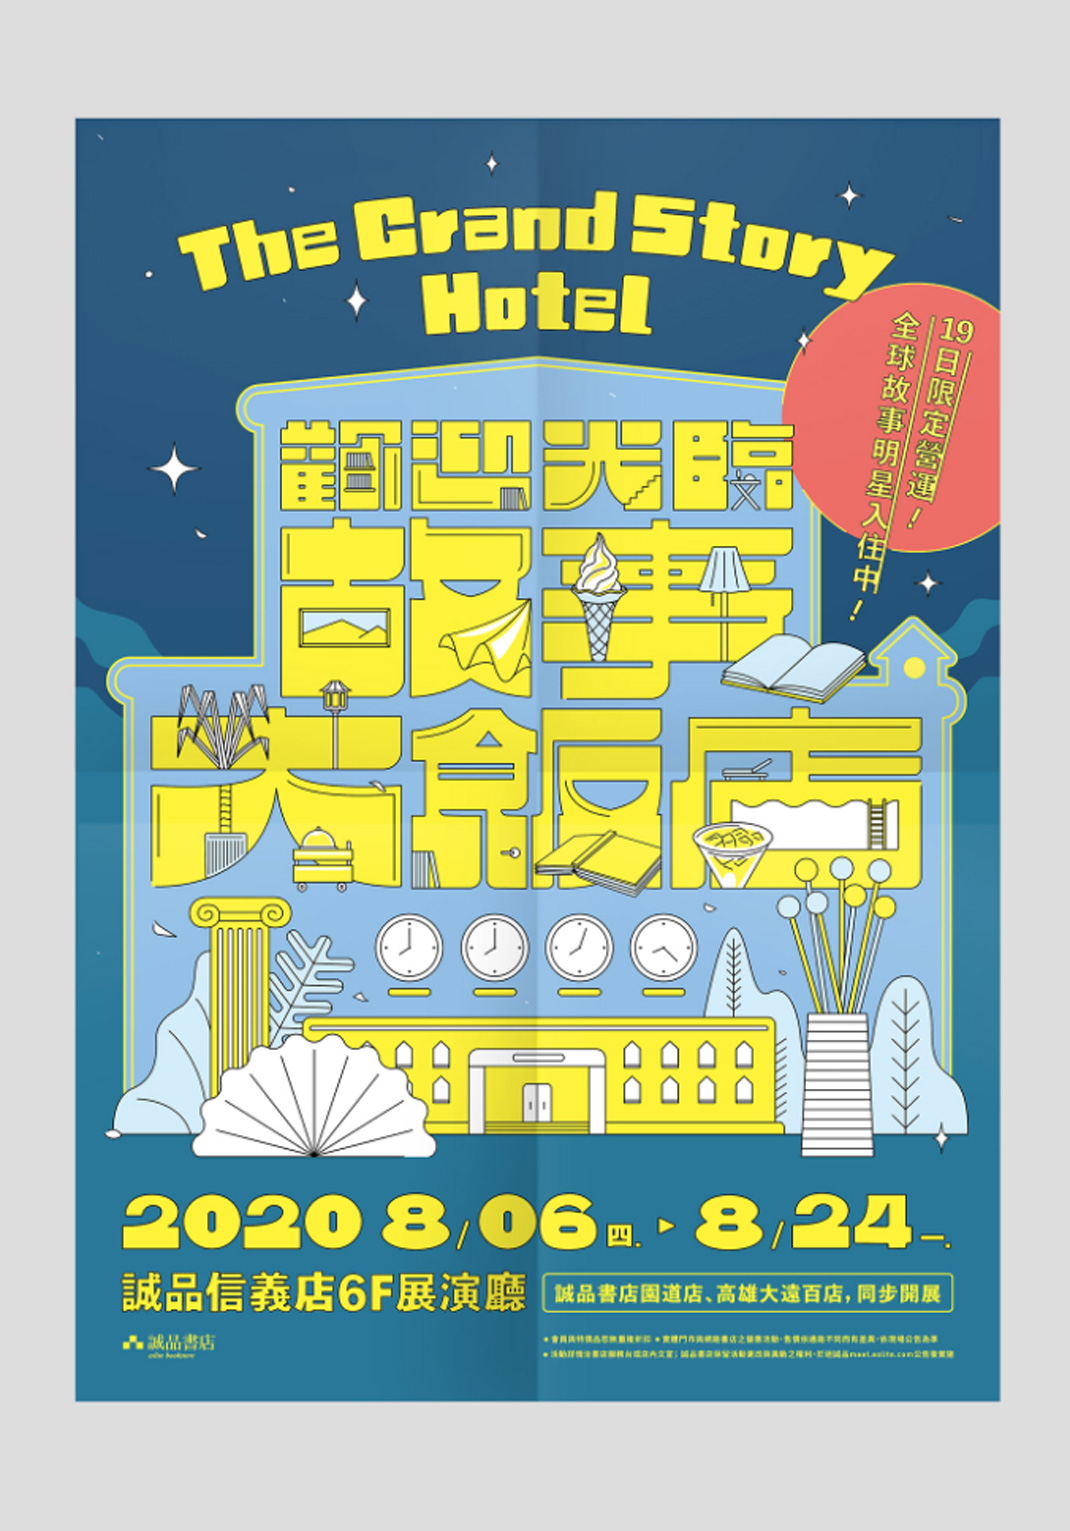 2020 故事大饭店 The Grand Story Hotel 台湾 大饭店 插画设计 字体设计 logo设计 vi设计 空间设计